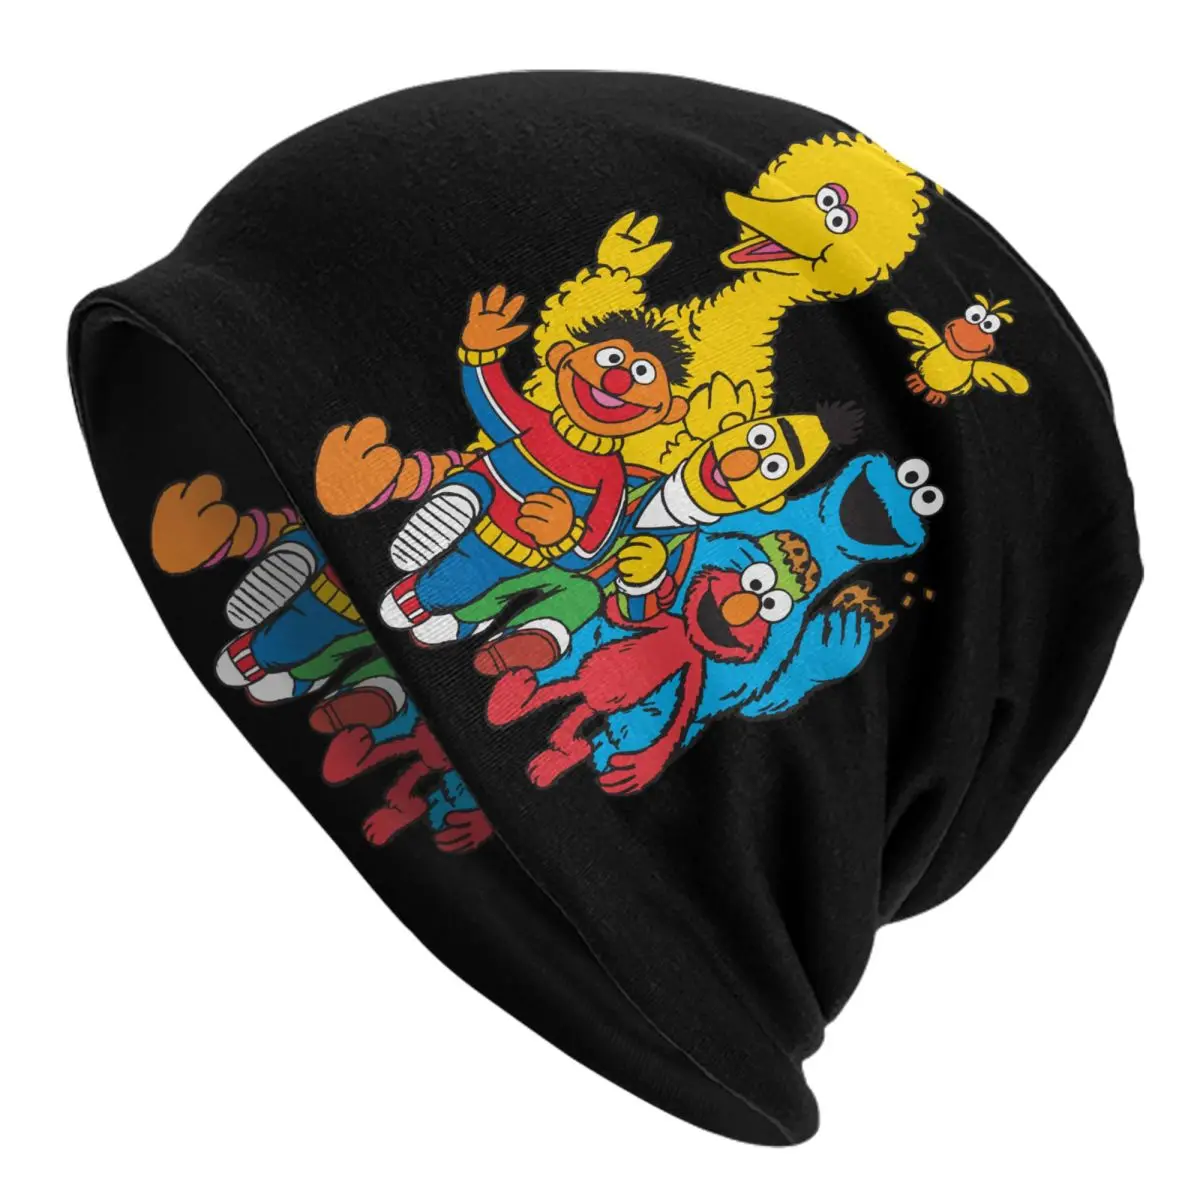 

Винтажные шапки с изображением монстра из Улица Сезам 123, шапки унисекс в стиле хип-хоп, уличные шапочки, шапка, Весенняя теплая шапка, головн...